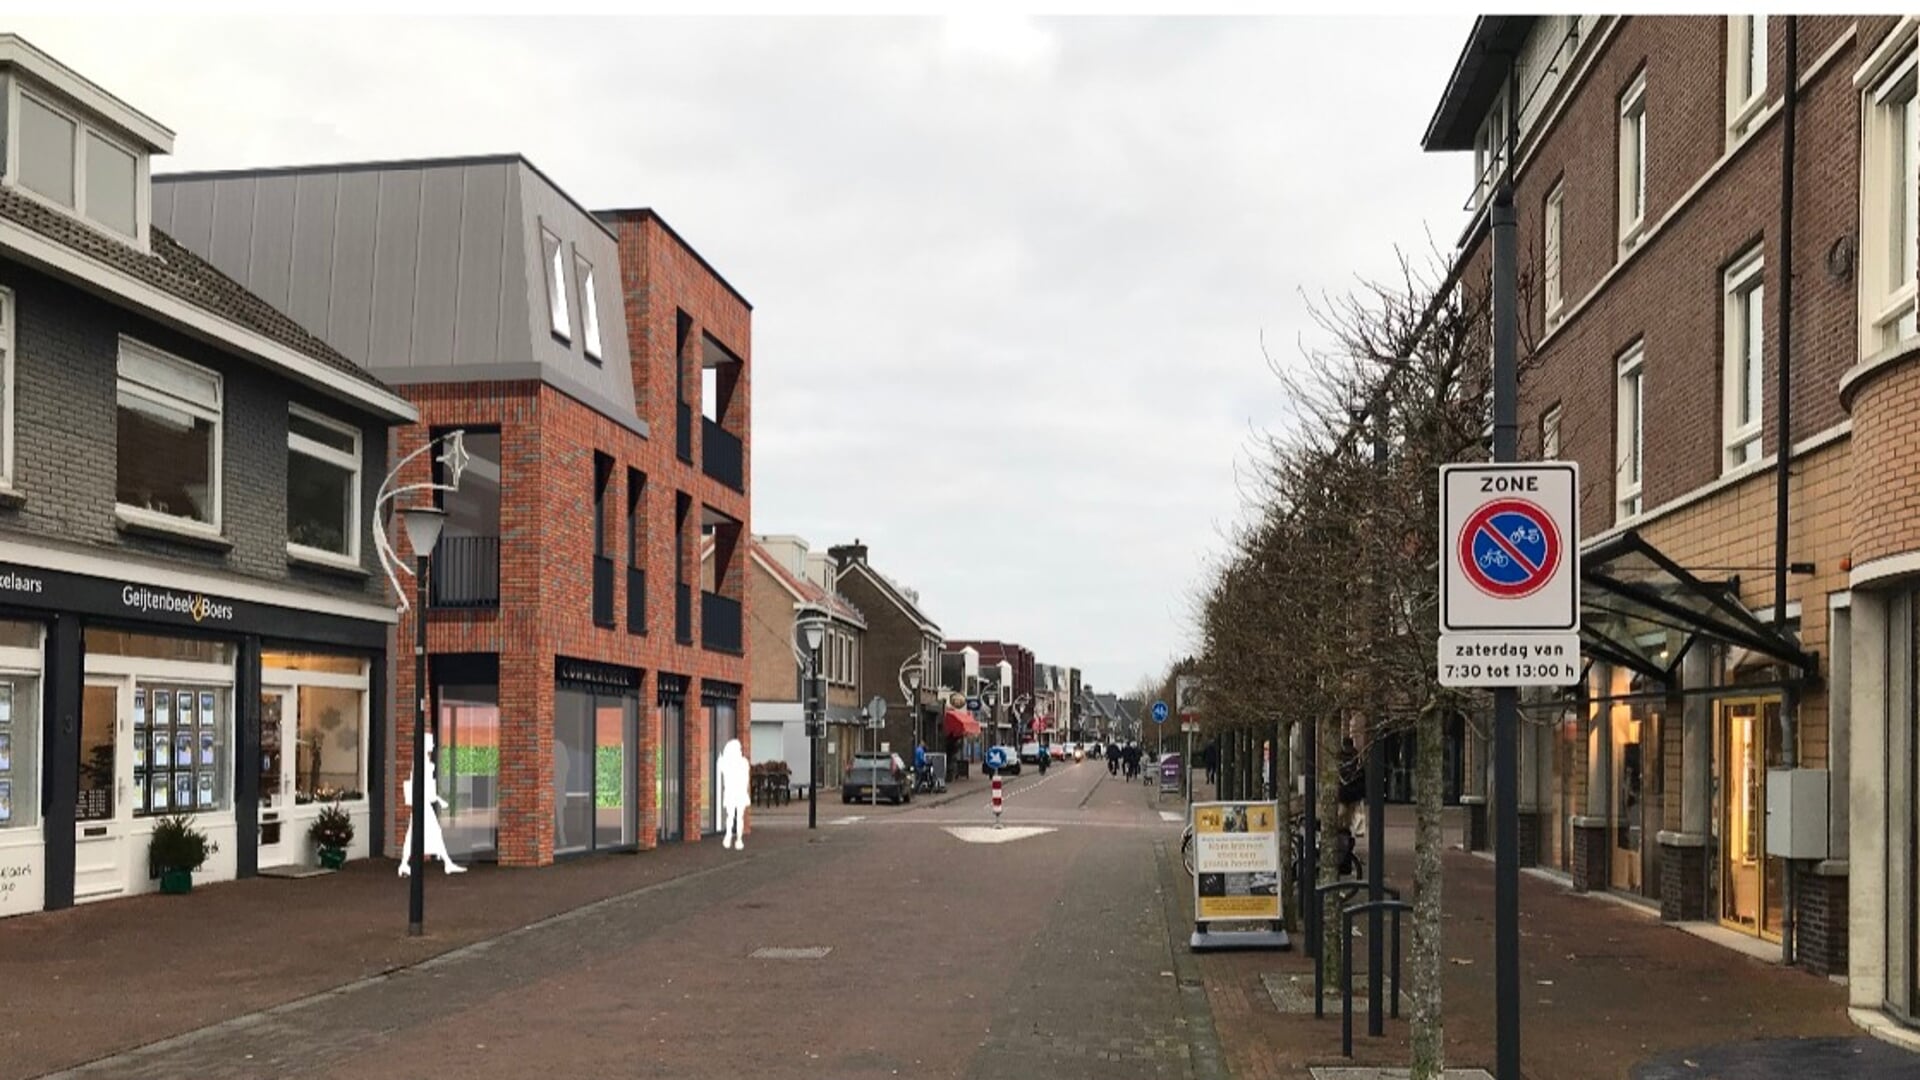 Het bouwvallige pand aan de Dorpsstraat 7 gaat plaatsmaken voor een nieuwe winkel met vier bovenliggende huurappartementen.